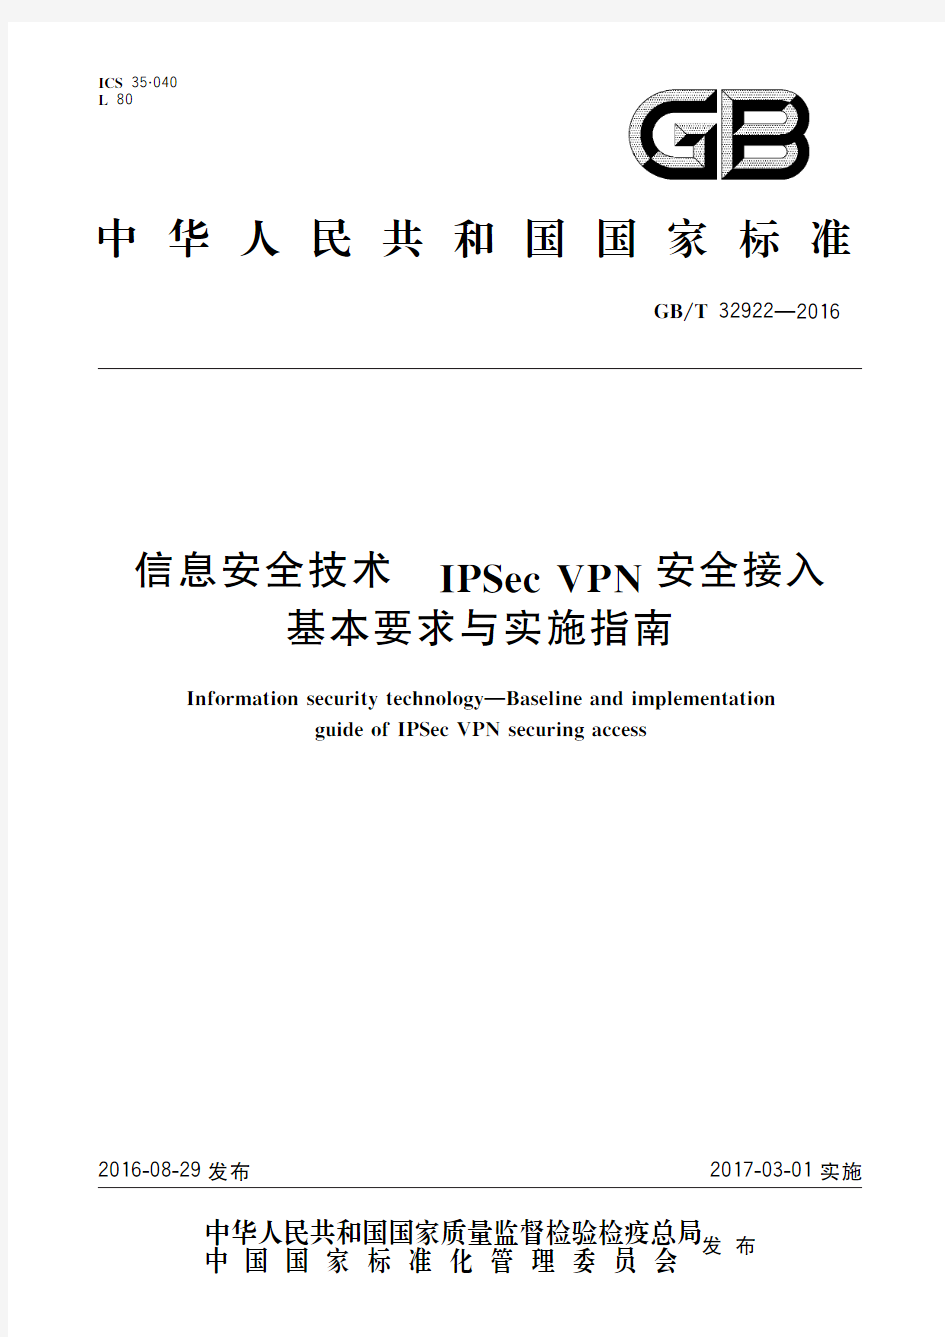 信息安全技术 IPSec VPN安全接入基本要求与实施指南(标准状态：现行)